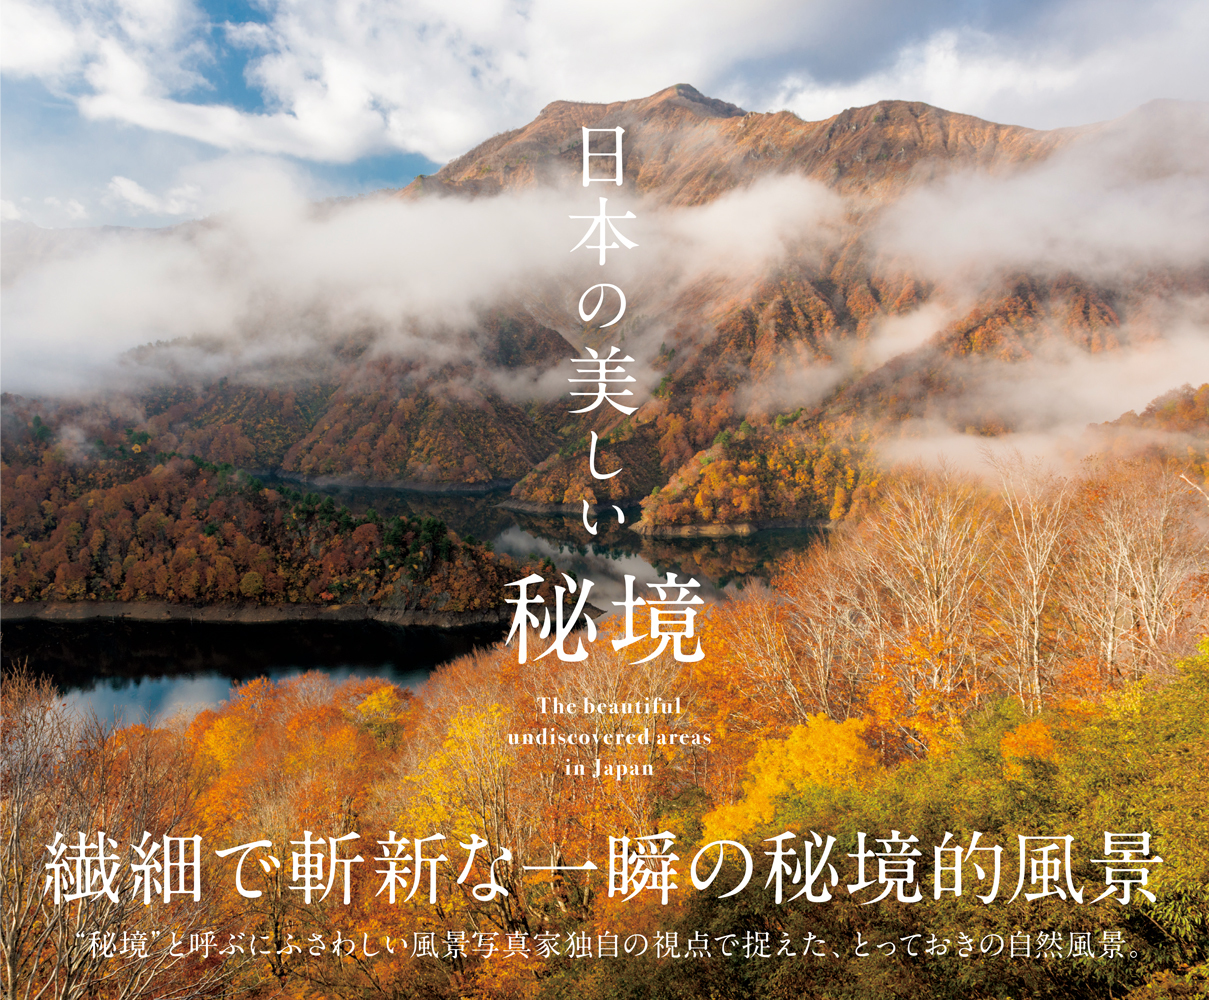 画像 写真集 日本の美しい秘境 が発売 風景写真家独自の視点で捉えた とっておきの自然風景93点を掲載 の画像1 6 Spice エンタメ特化型情報メディア スパイス